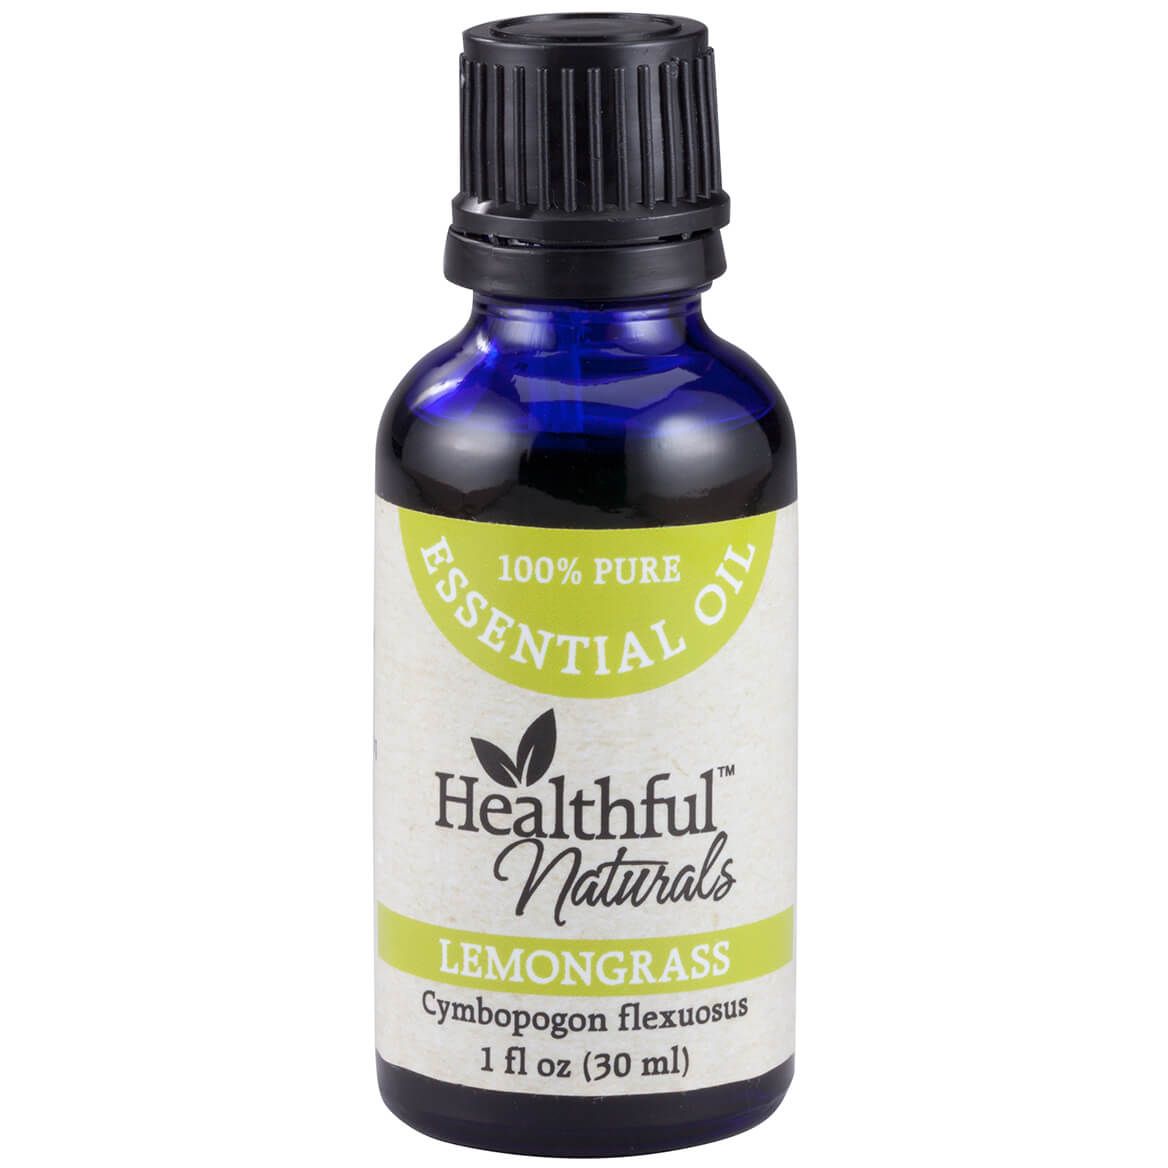 Healthful™ Naturals Lemongrass Essential Oil, 30 ml + '-' + 356510